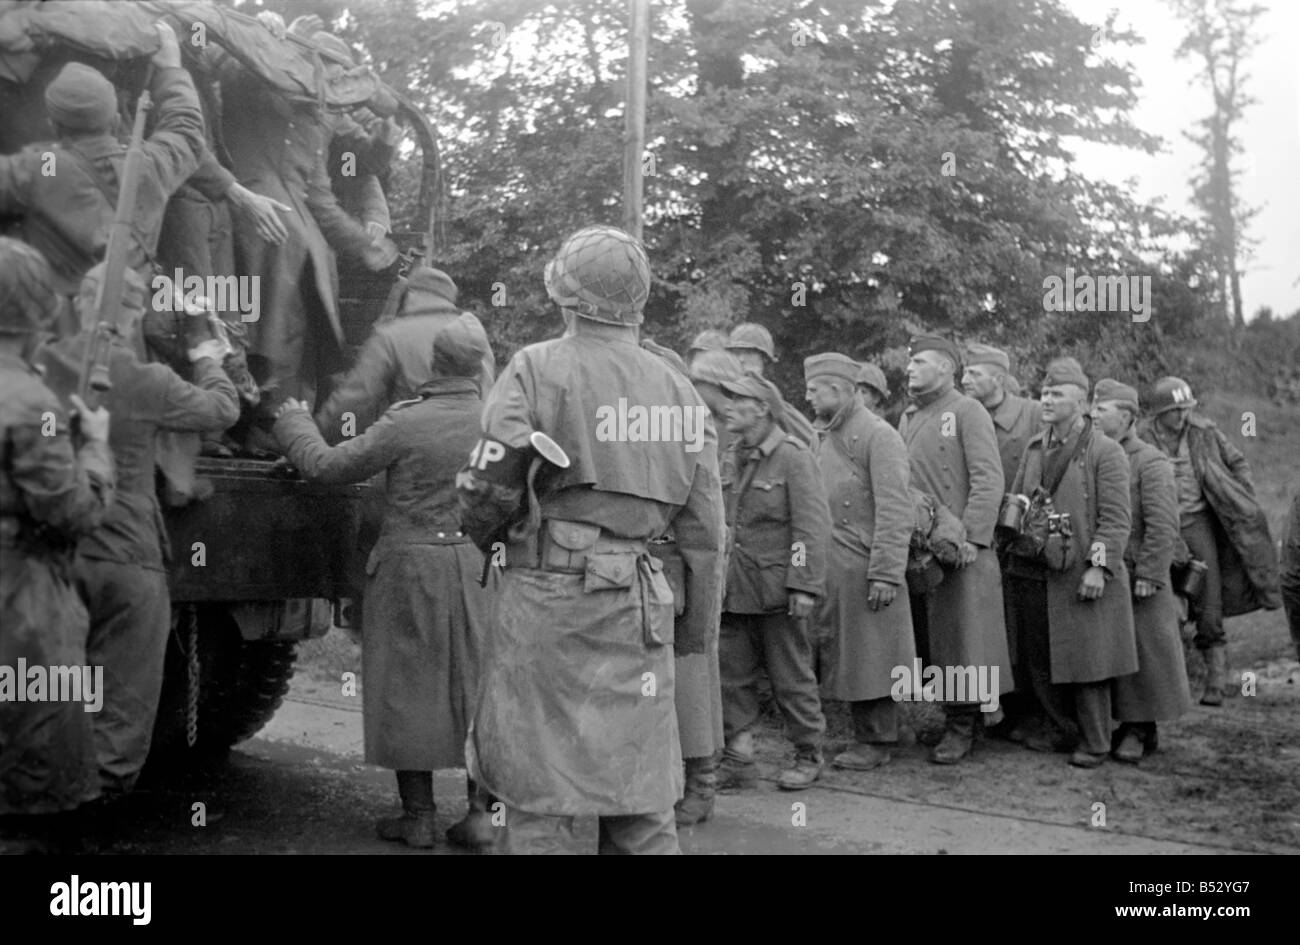 Les troupes allemandes capturées par des éléments de l'Armée américaine à Cherbourg suite à l'invasion de la Normandie, le nord de la France pendant la Seconde Guerre mondiale. ;Juin 1944 ;OL307NA-005 Banque D'Images